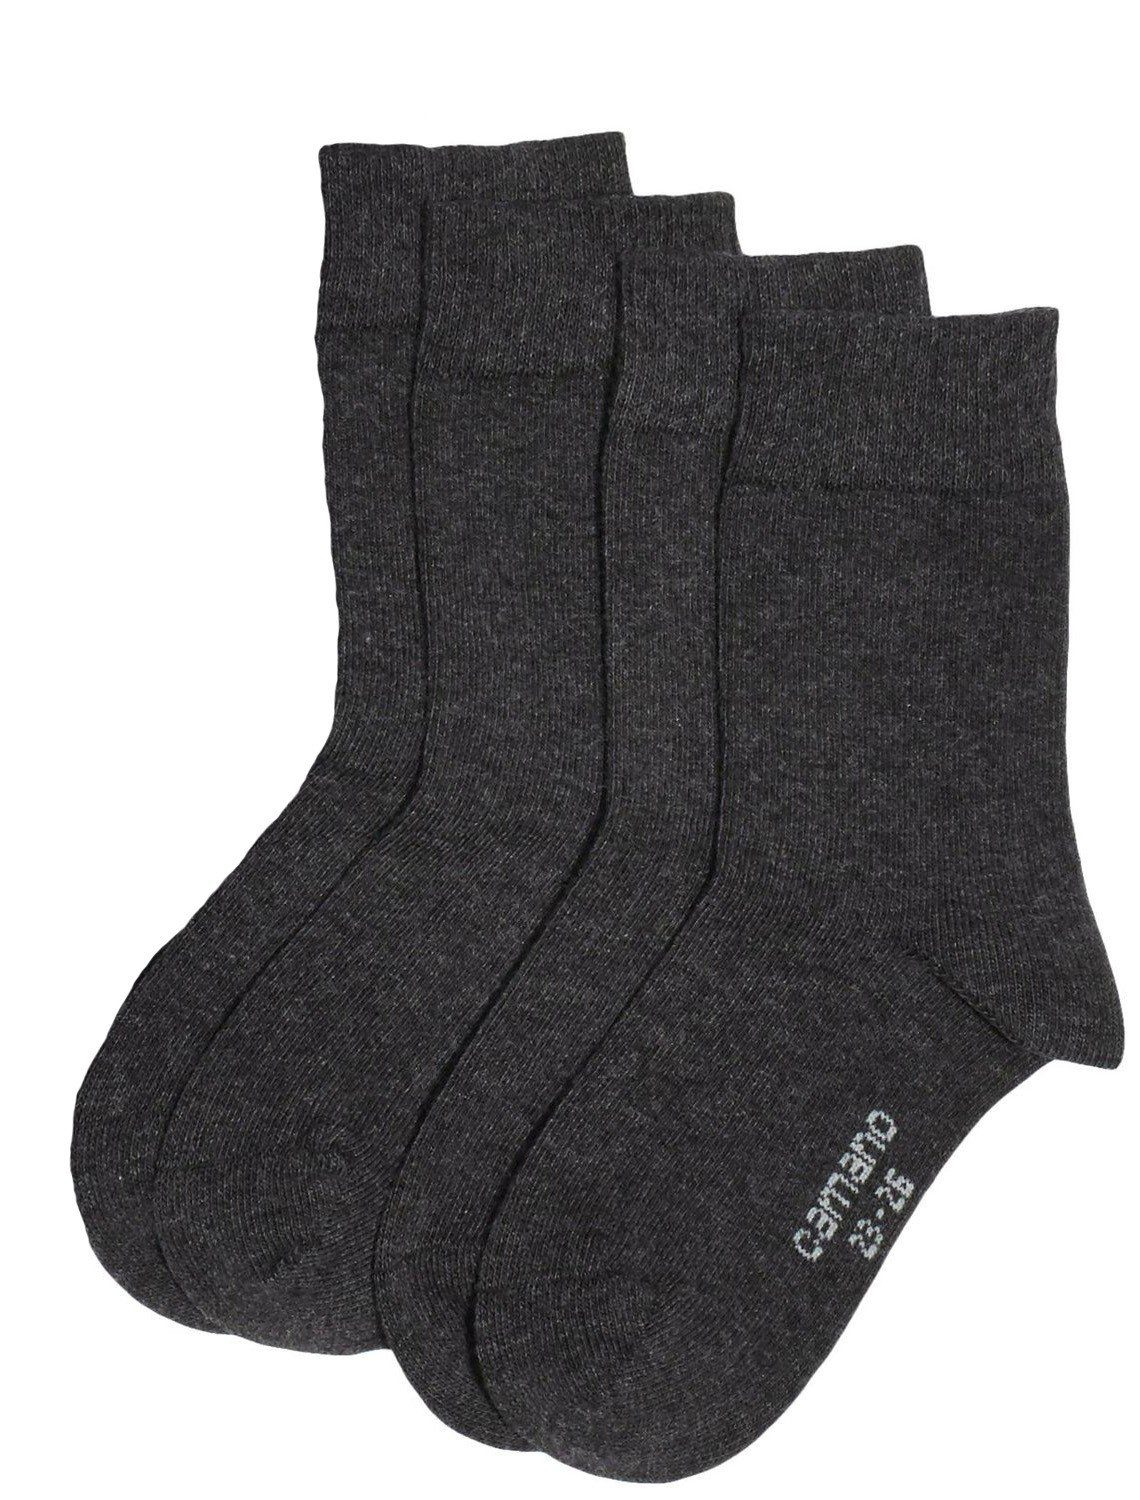 Langsocken Mädchen CA3702 4-Paar, Jungen Pack, Paar) 2x2er oder Socken, Strümpfe, Camano 4 (Packung, Socken Baumwolle